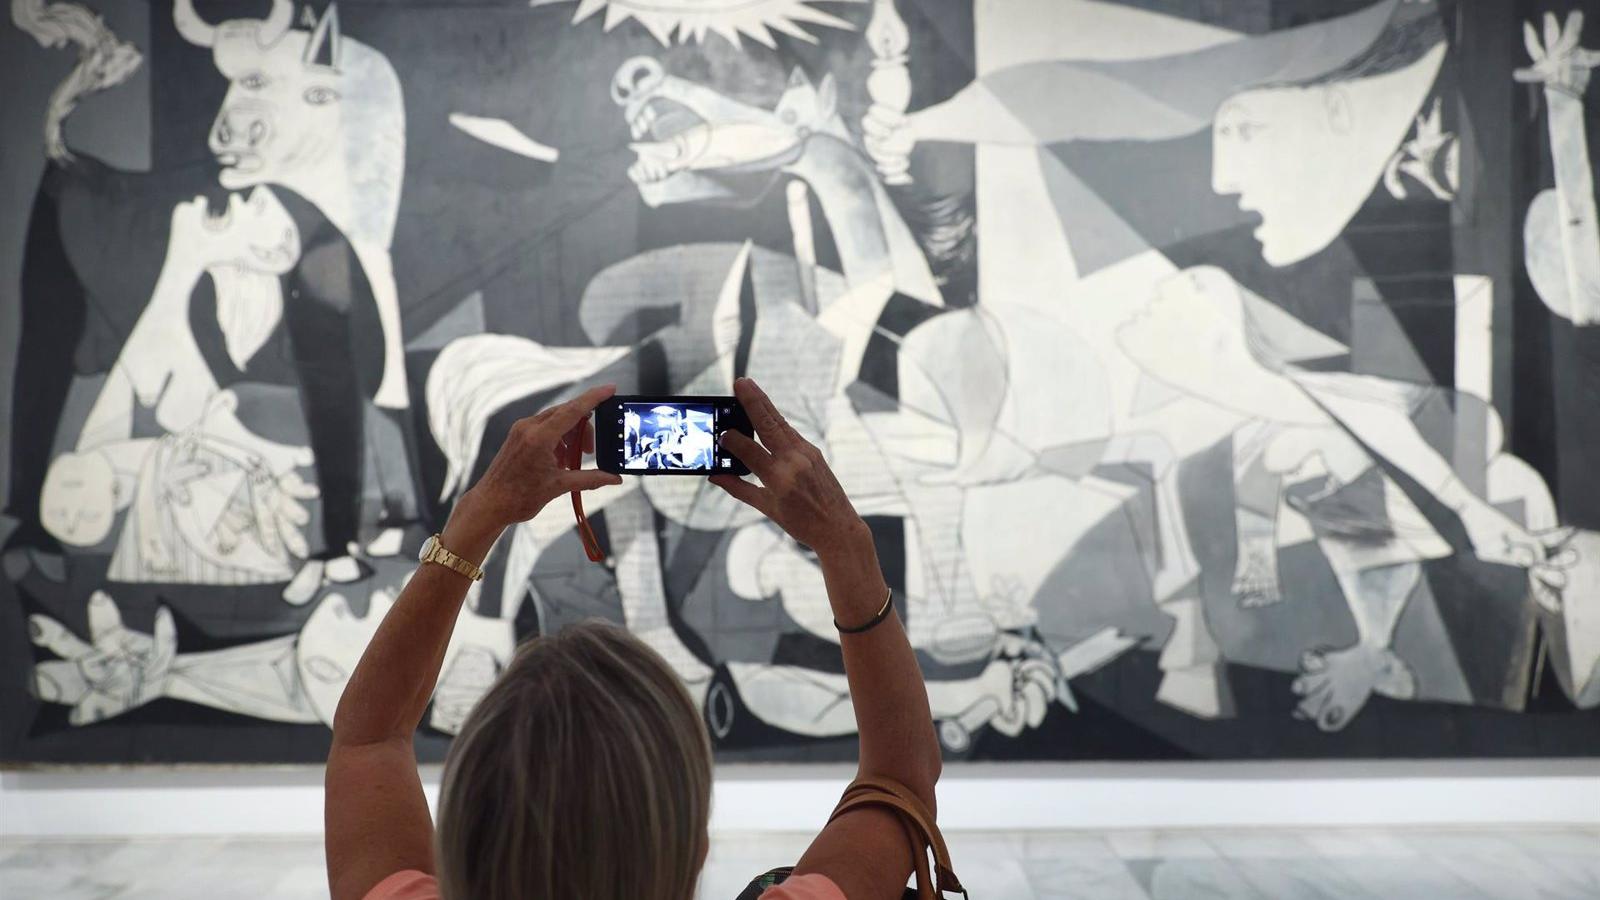 El Museo Reina Sofía refuerza la sala del Guernica, incluyendo vigilancia policial